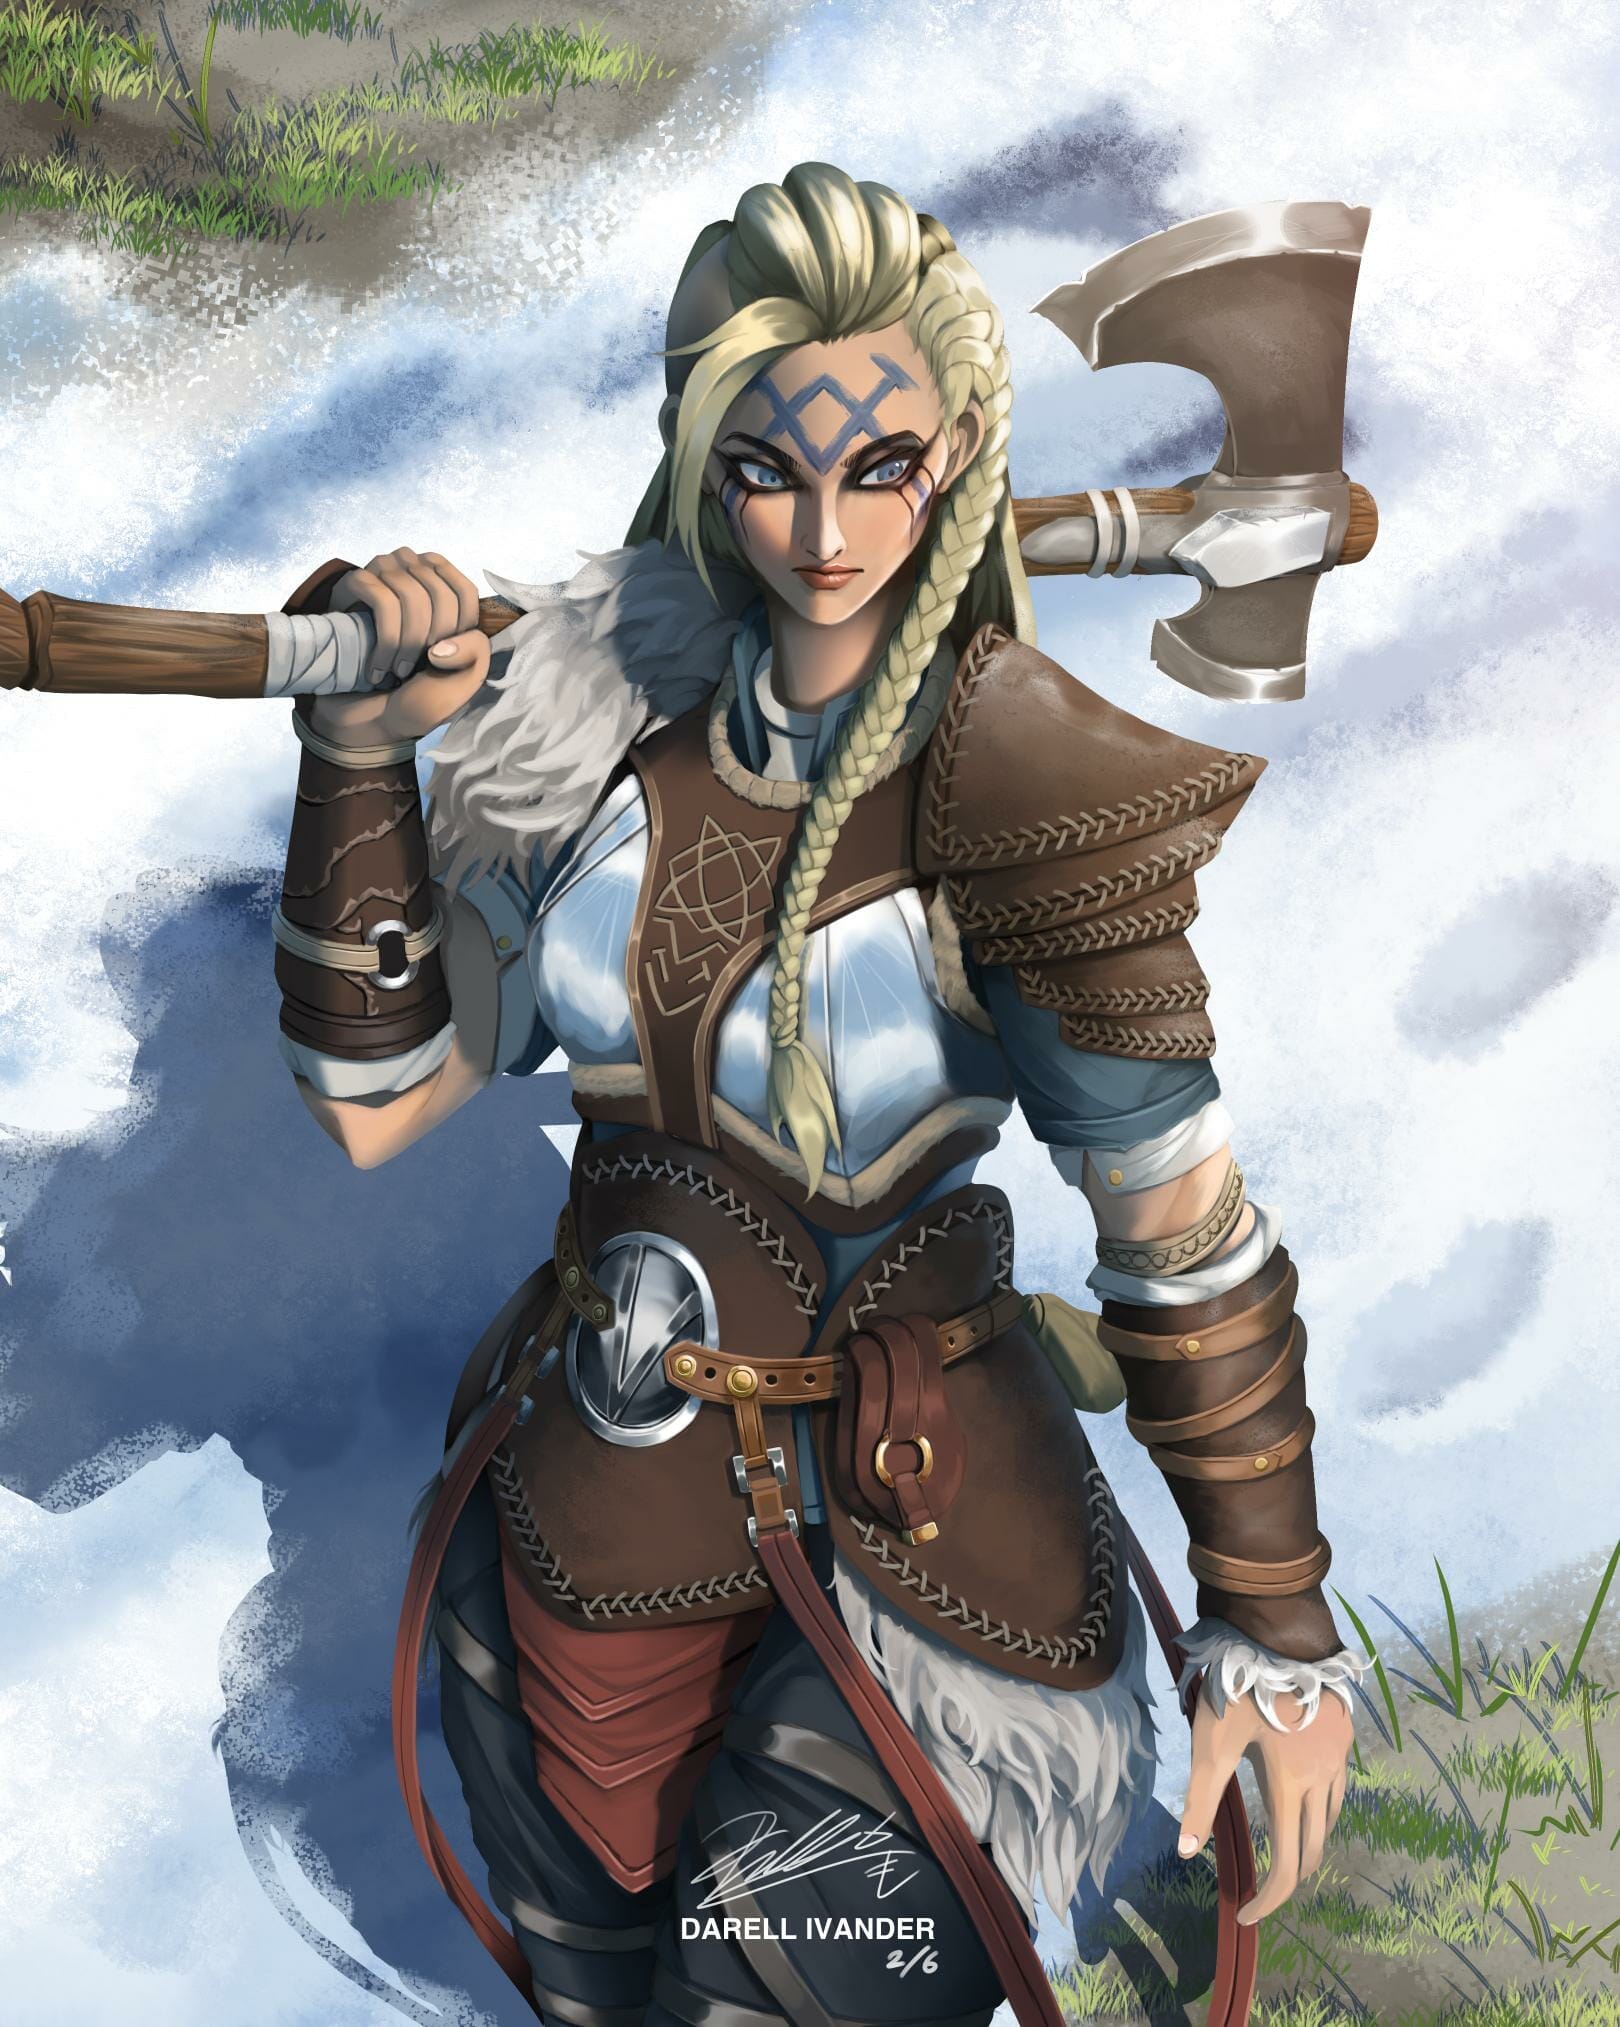 Hilda THE Viking Warrior